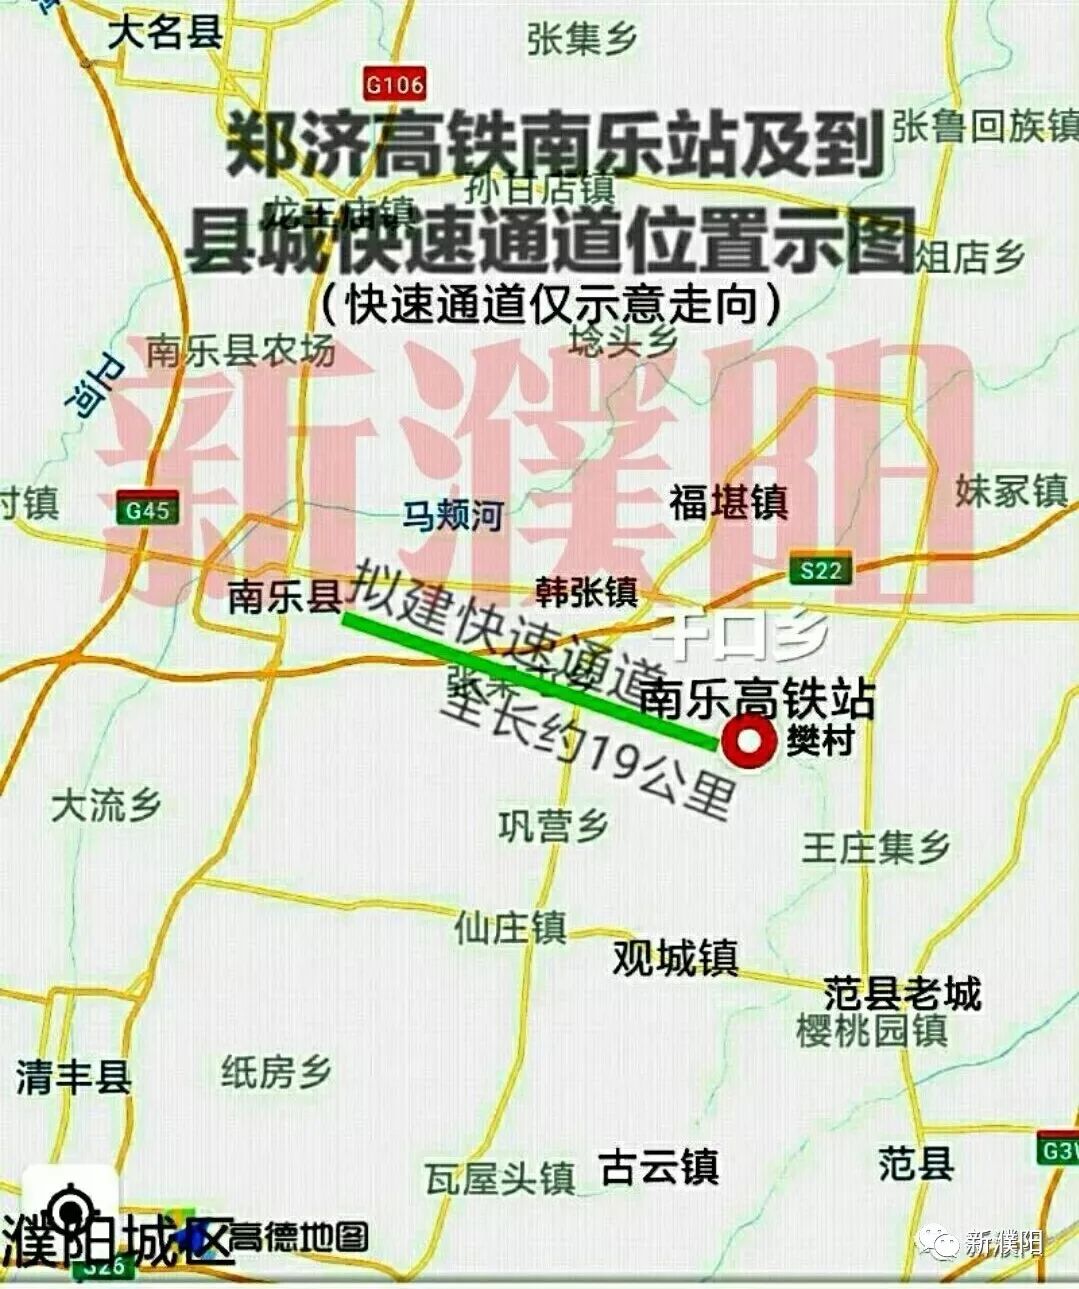 濮阳将建第二座高铁站!郑济高铁城区至省界段终于有望开建!